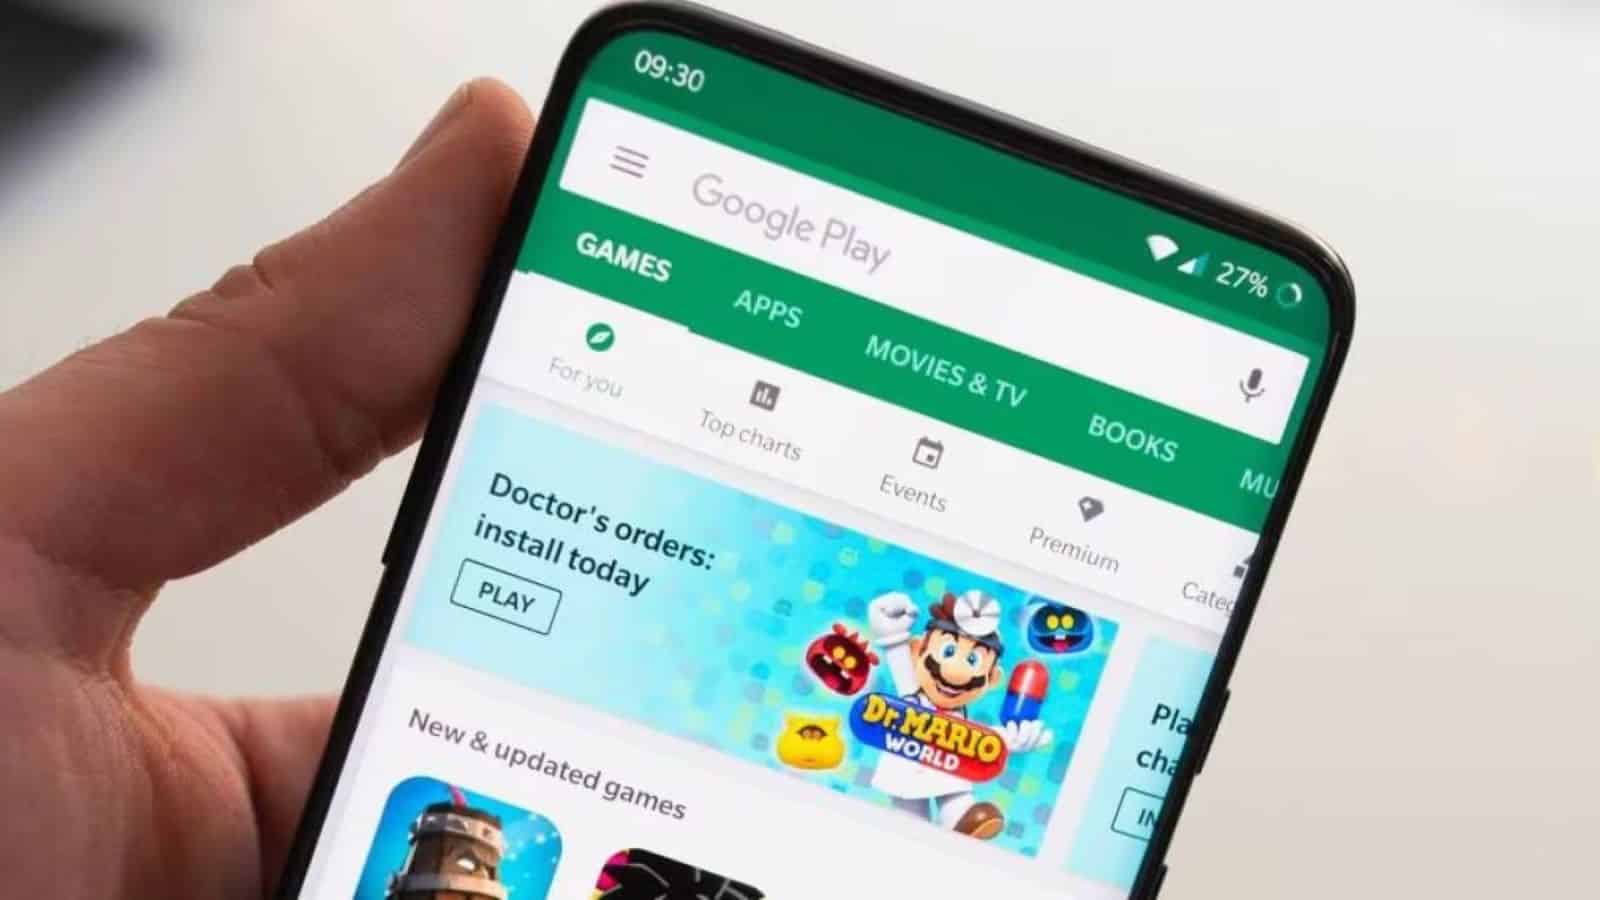 Google Play Store, app e giochi a pagamento GRATIS per gli utenti Android